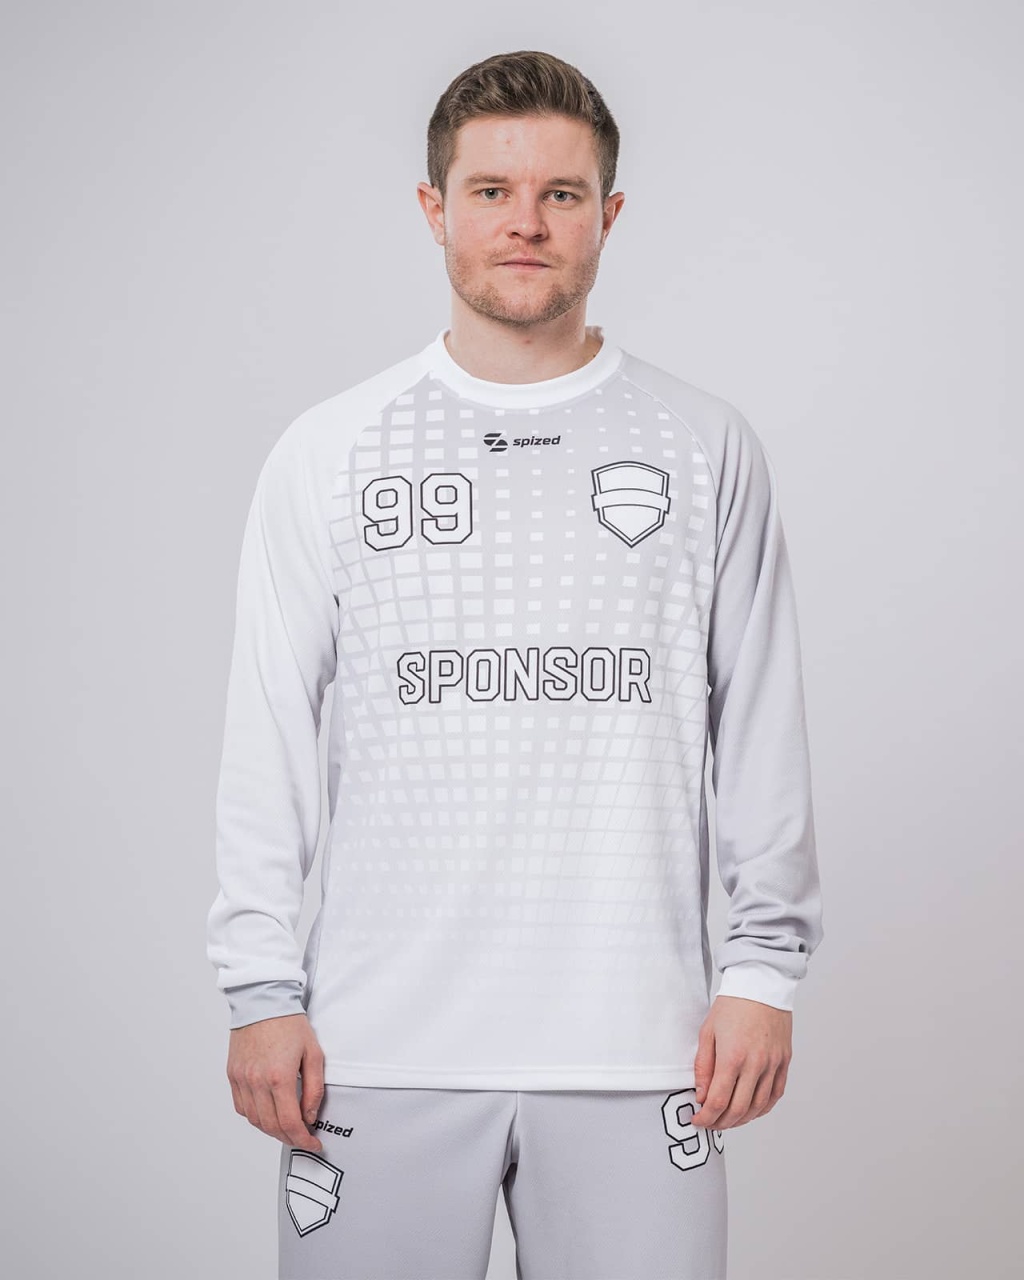 Drammen men’s handball goalkeeper’s jersey